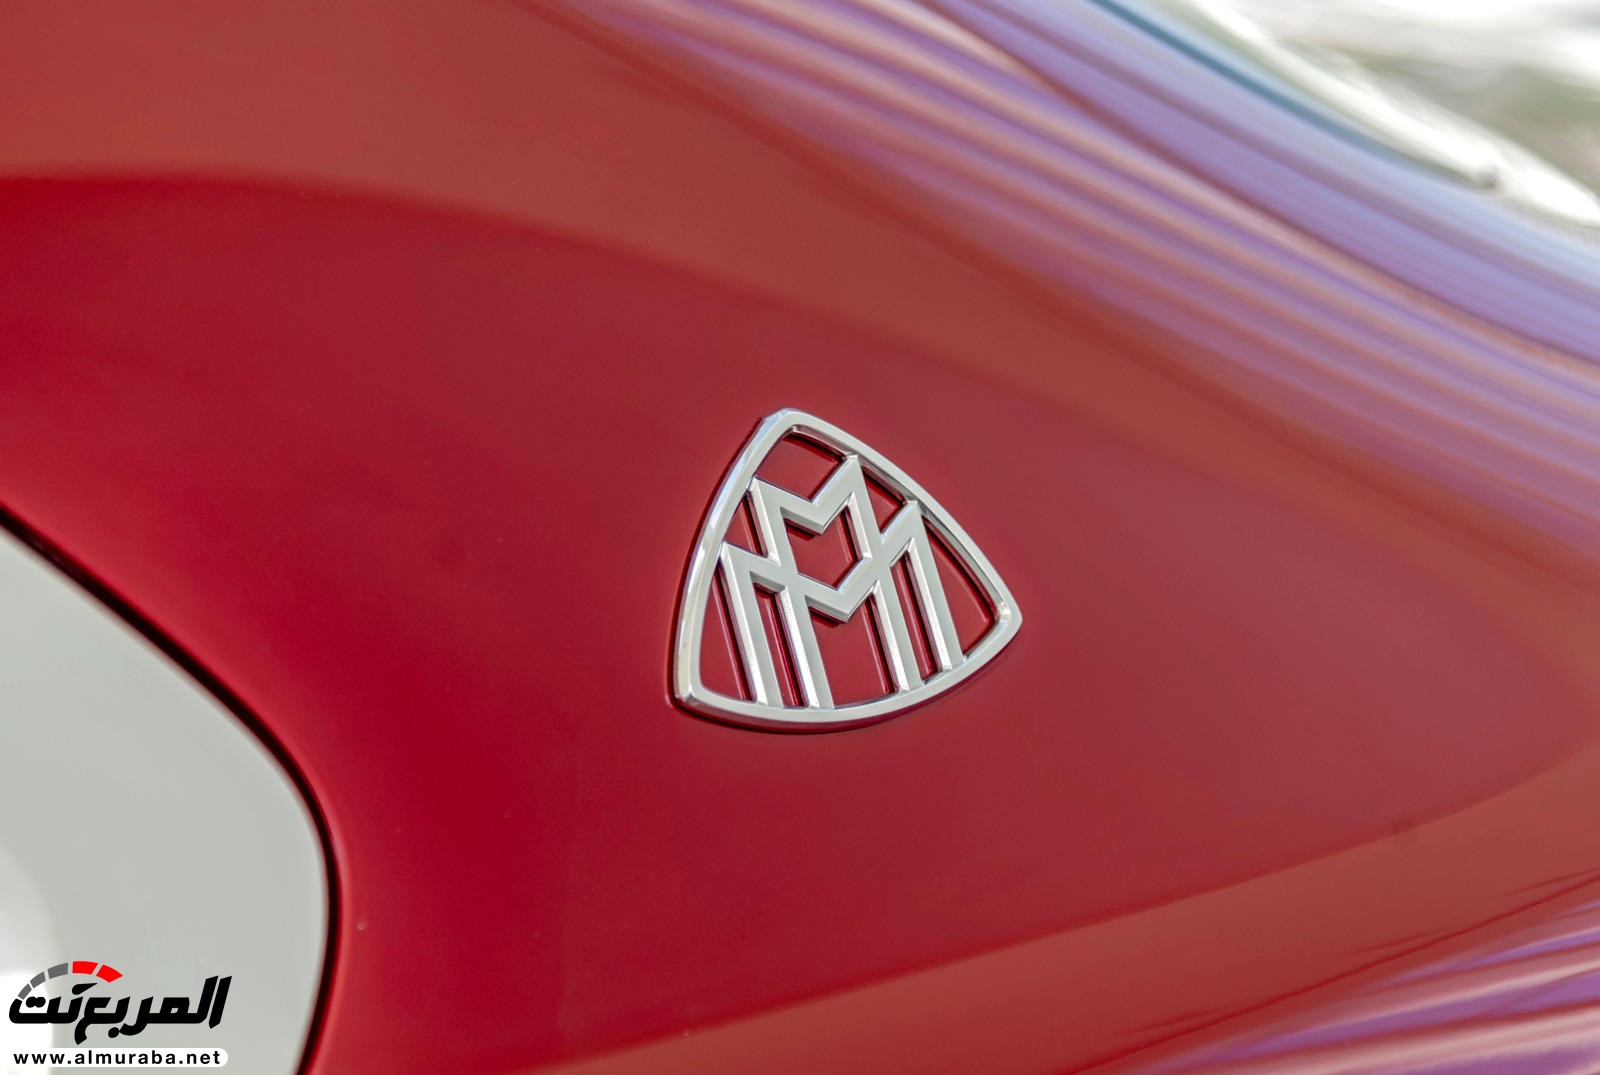 "بالصور" نظرة على مرسيدس مايباخ SUV الاختبارية وفخامتها الداخلية والخارجية 73